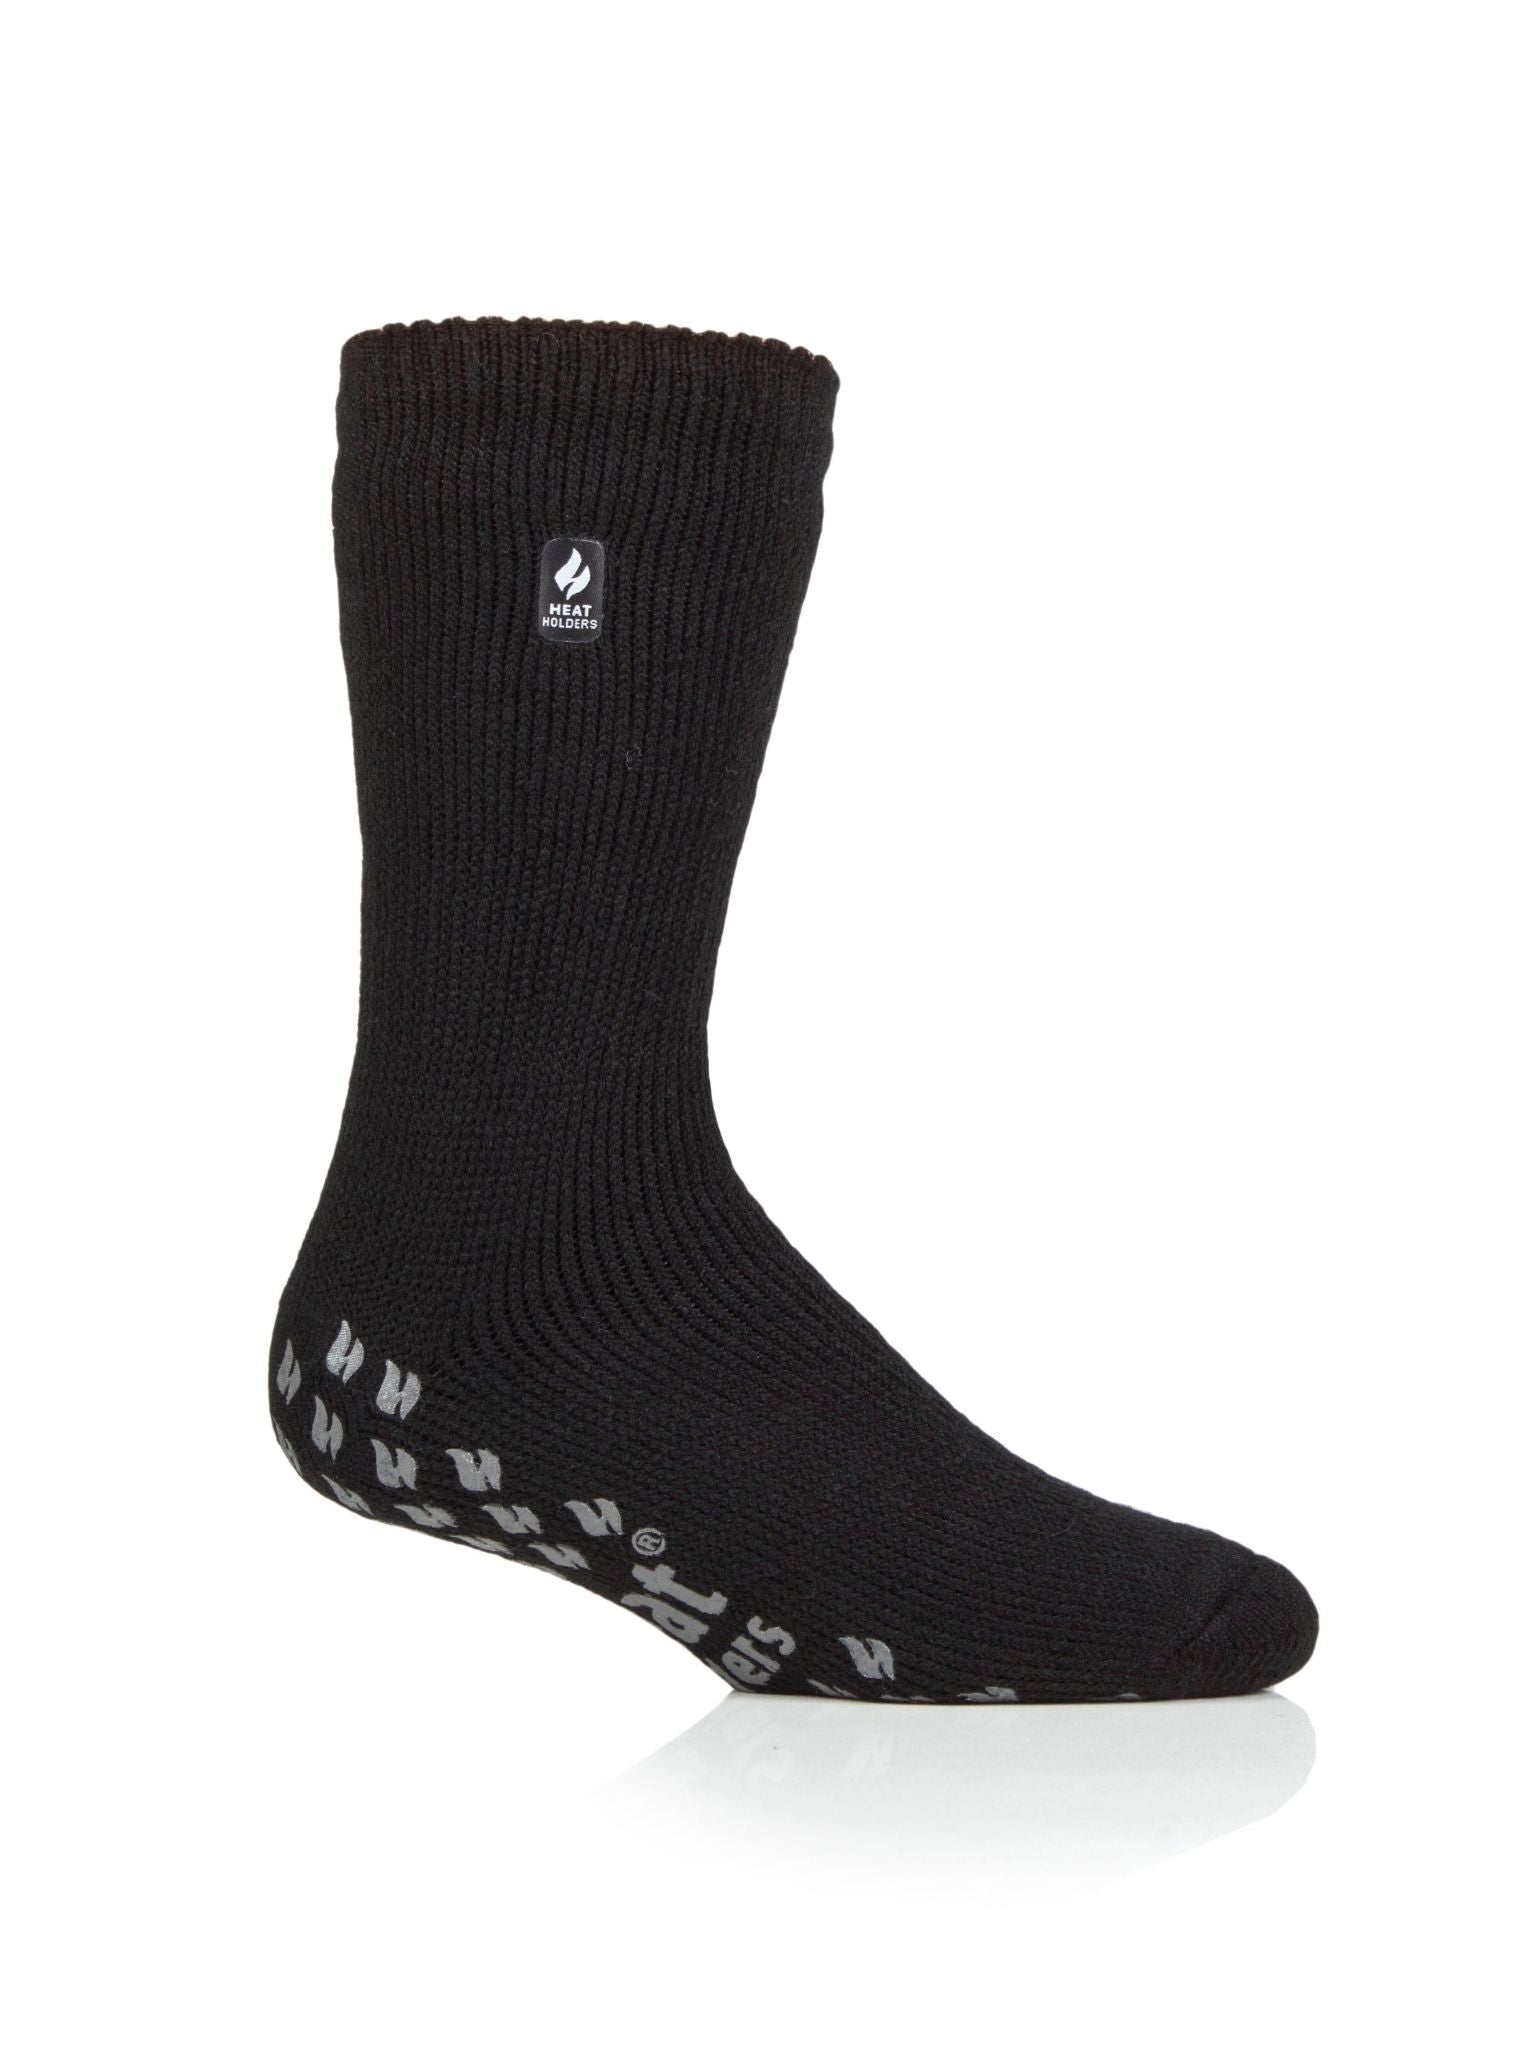 HEAT HOLDERS Original Ultimate Thermal Slipper Socks - Men's Bigfoot